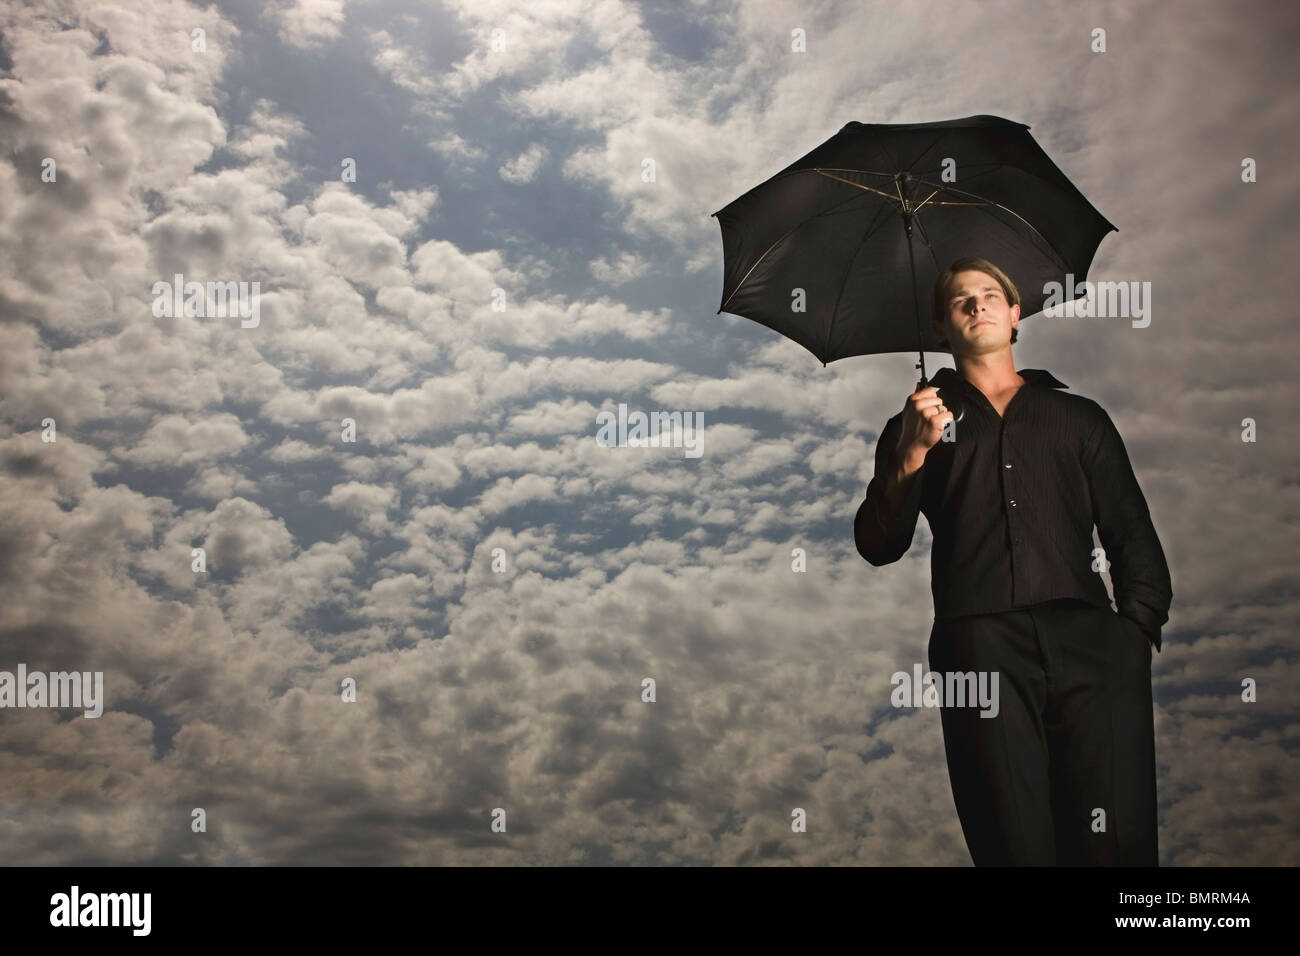 Ein Mann hält einen Regenschirm unter einem Himmel voller Wolken Stockfoto